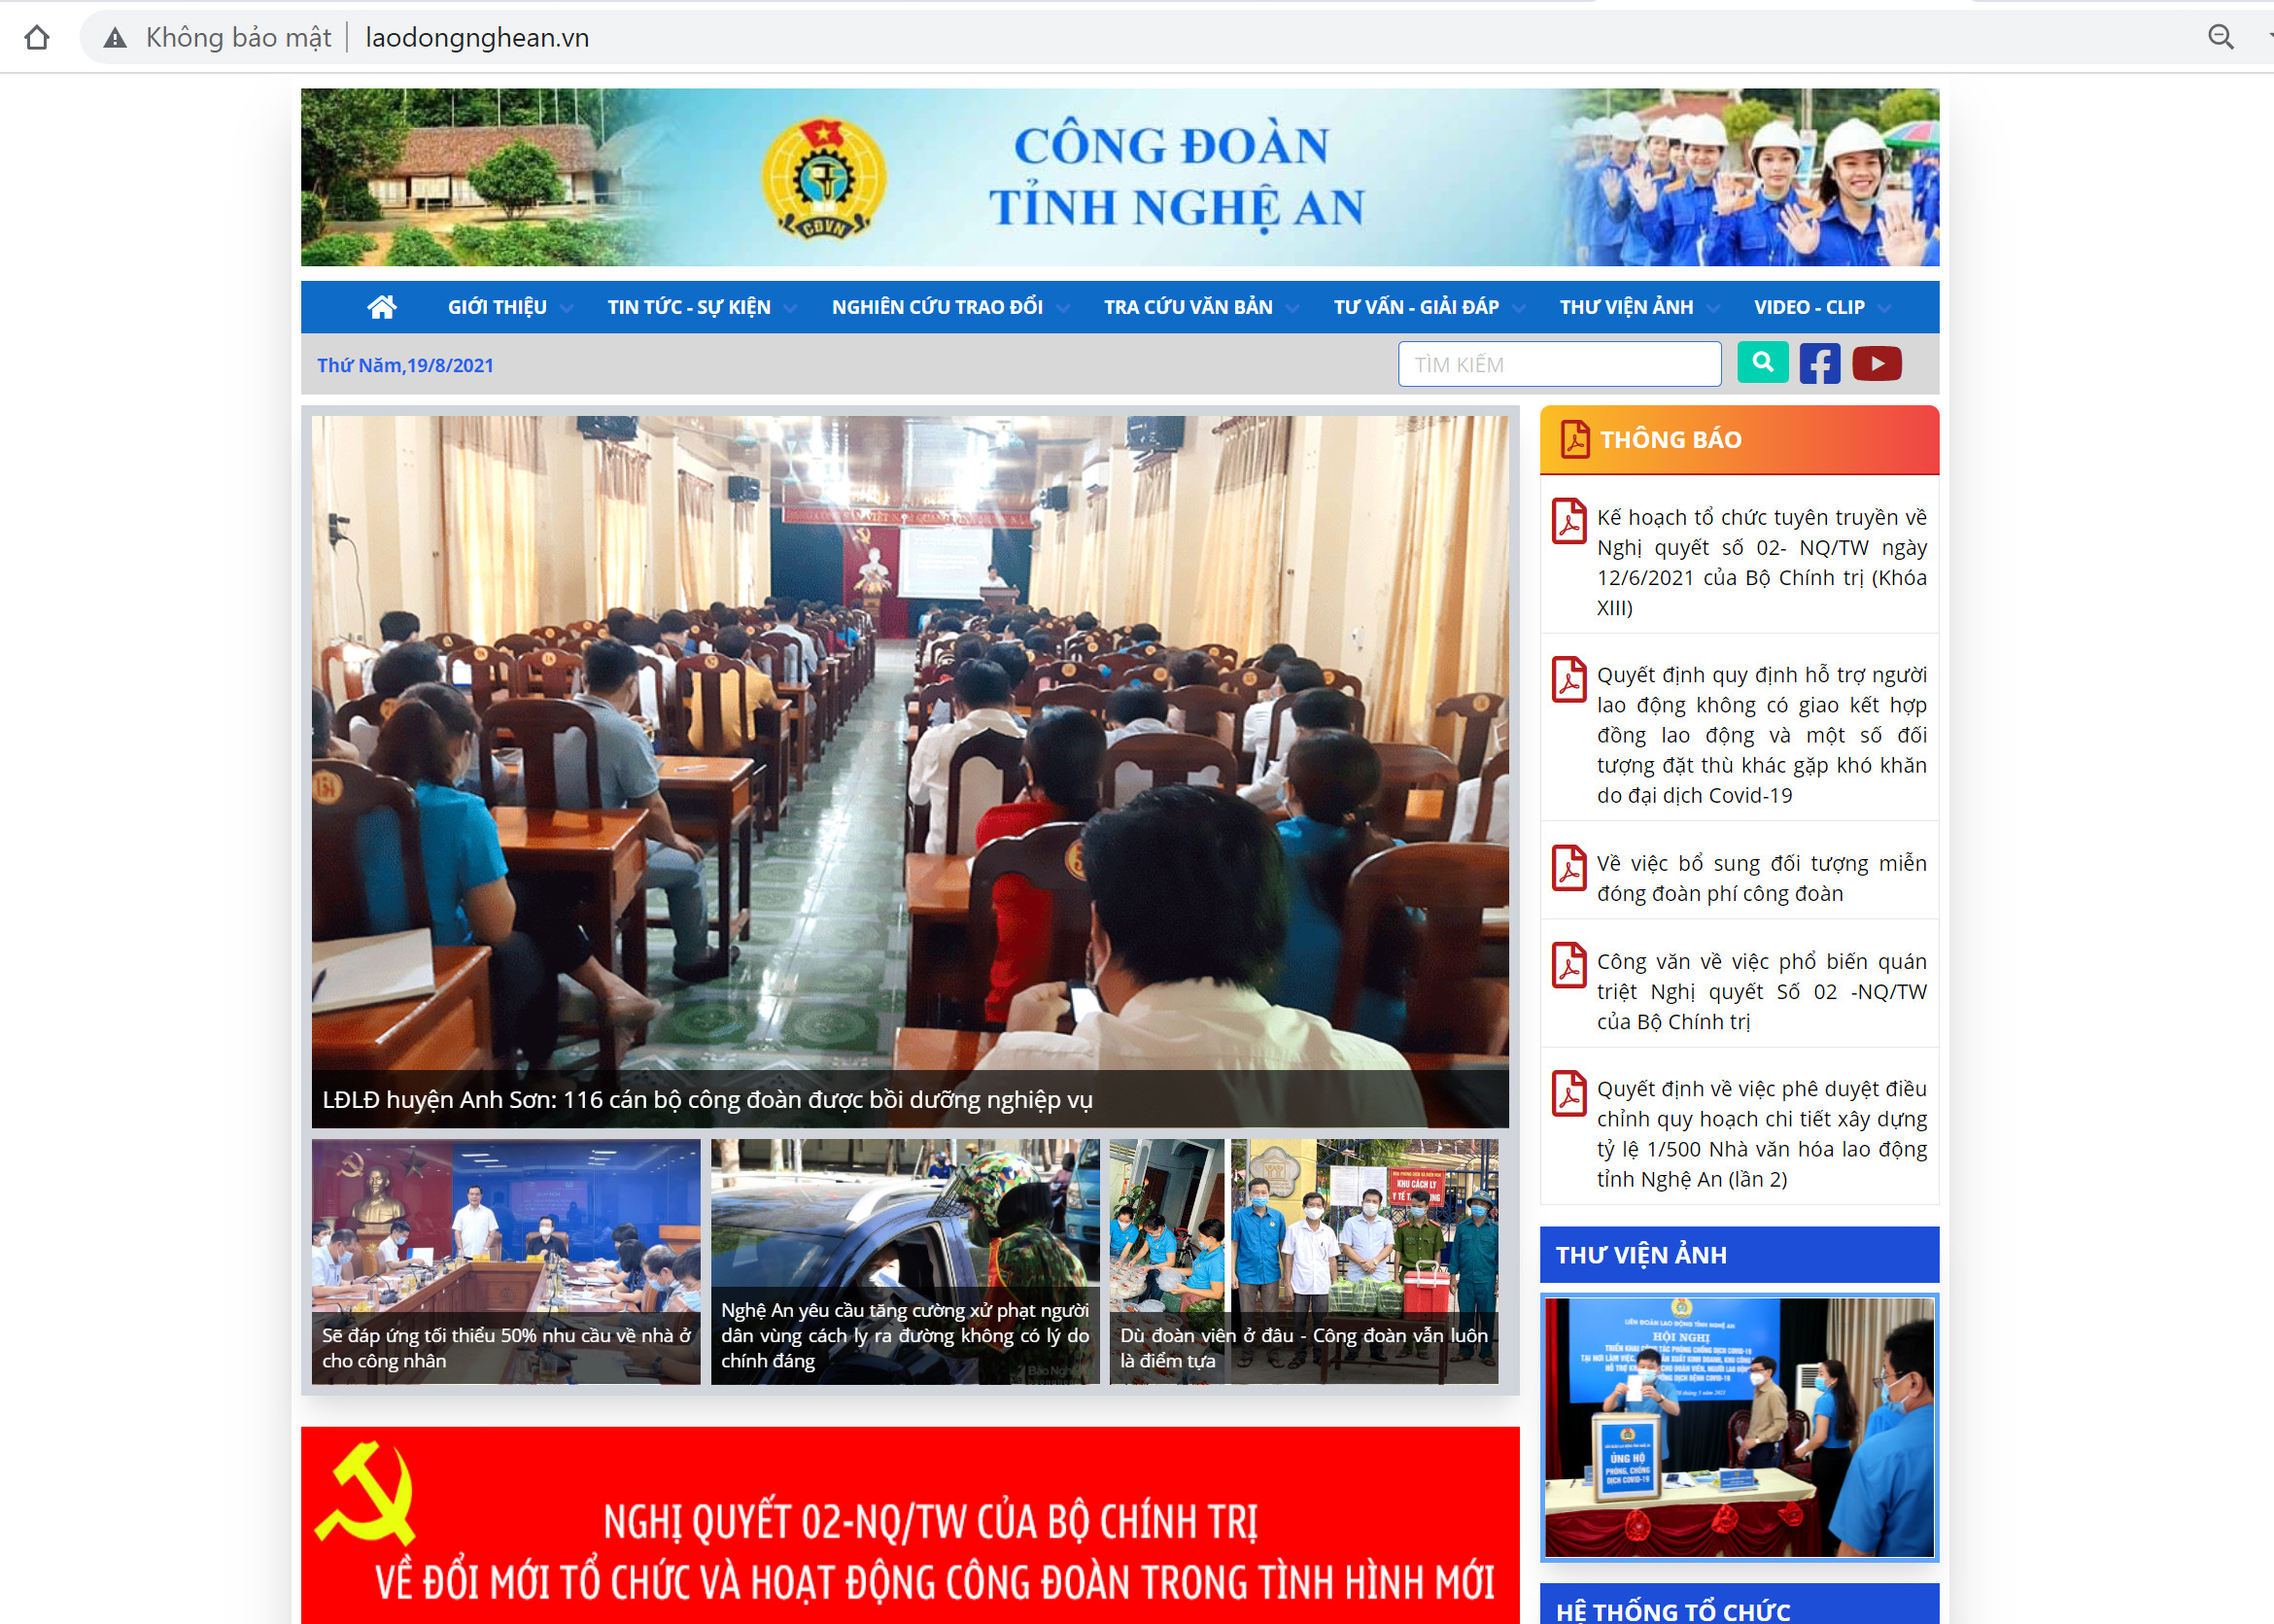 Trang Thông tin điện tử của LĐLĐ tỉnh Nghệ An cập nhật những tin tức mới và đăng tải những bài viết chất lượng hàng ngày. Ảnh: Chụp màn hình